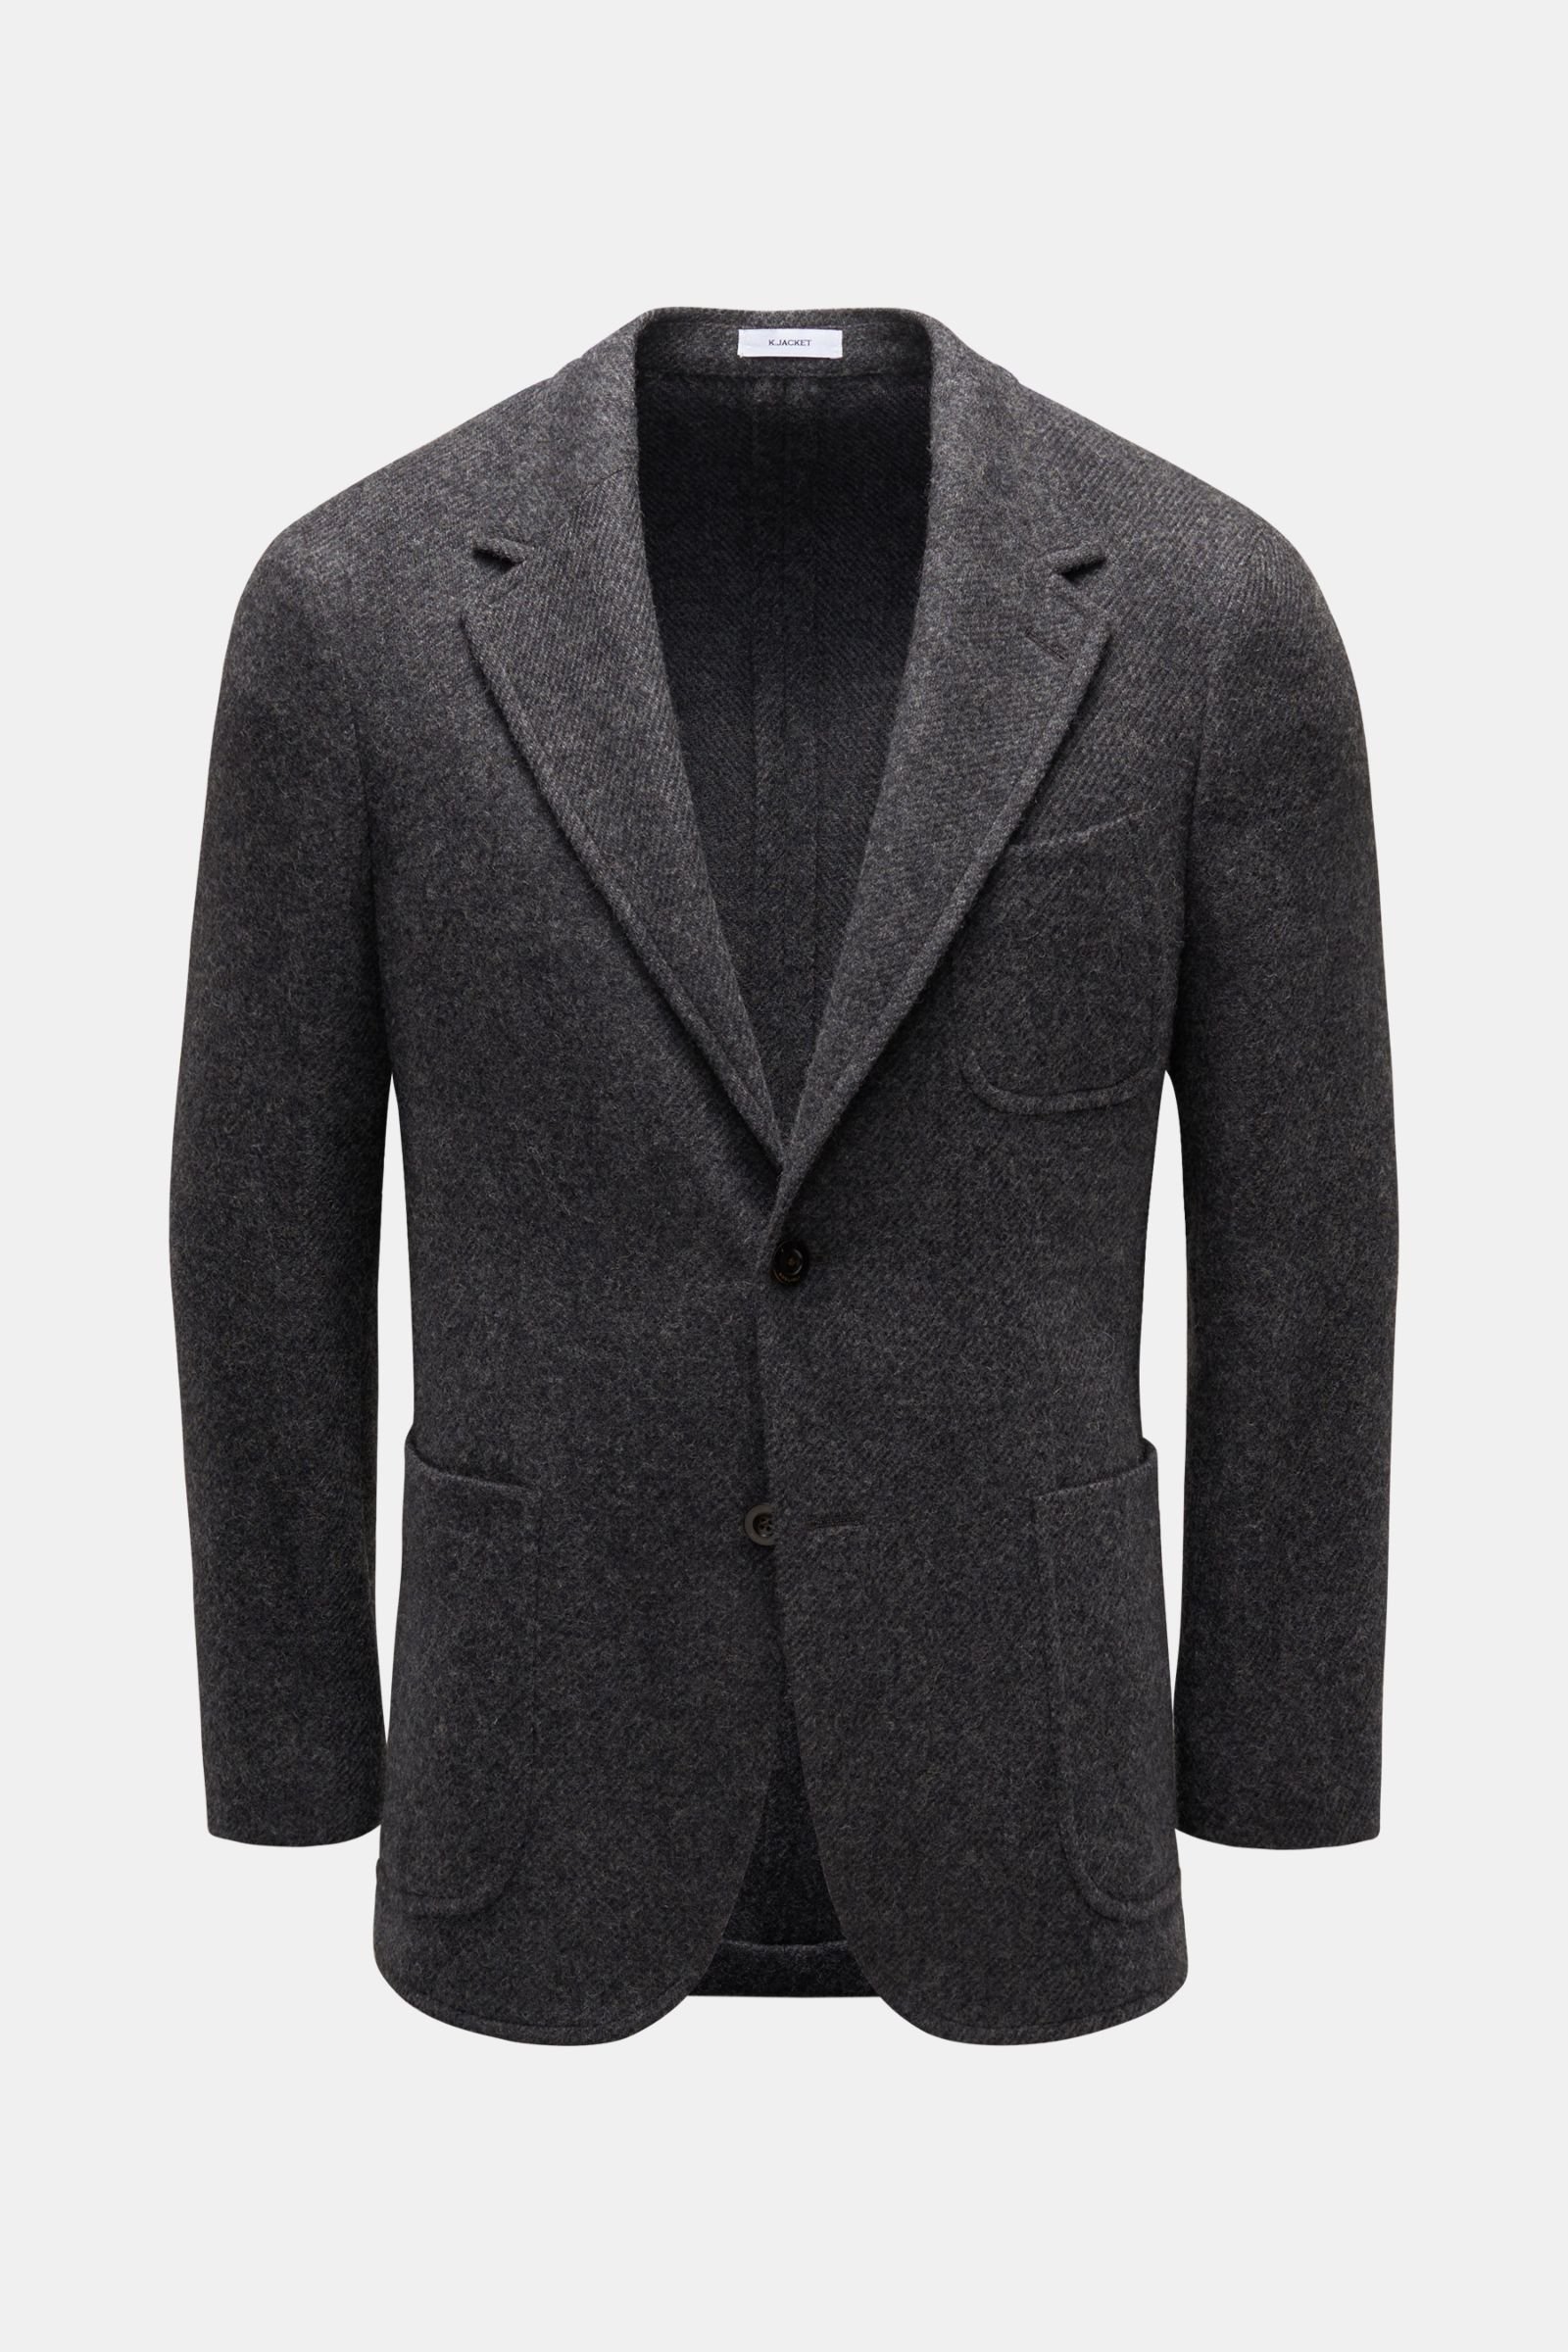 Smart-casual jacket 'K. Jacket' dark grey